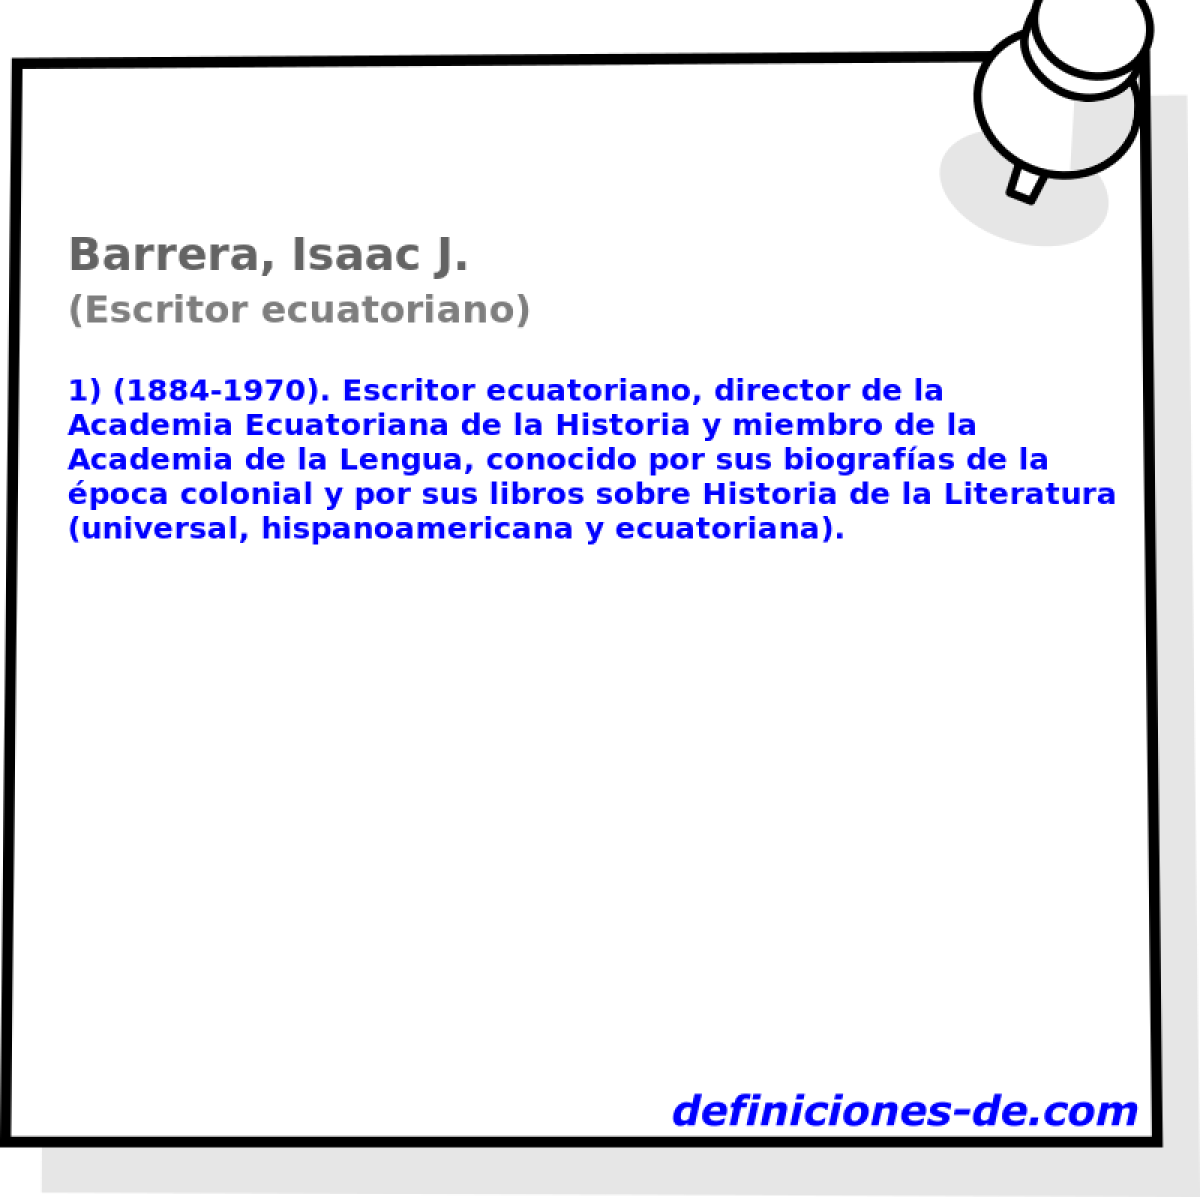 Barrera, Isaac J. (Escritor ecuatoriano)